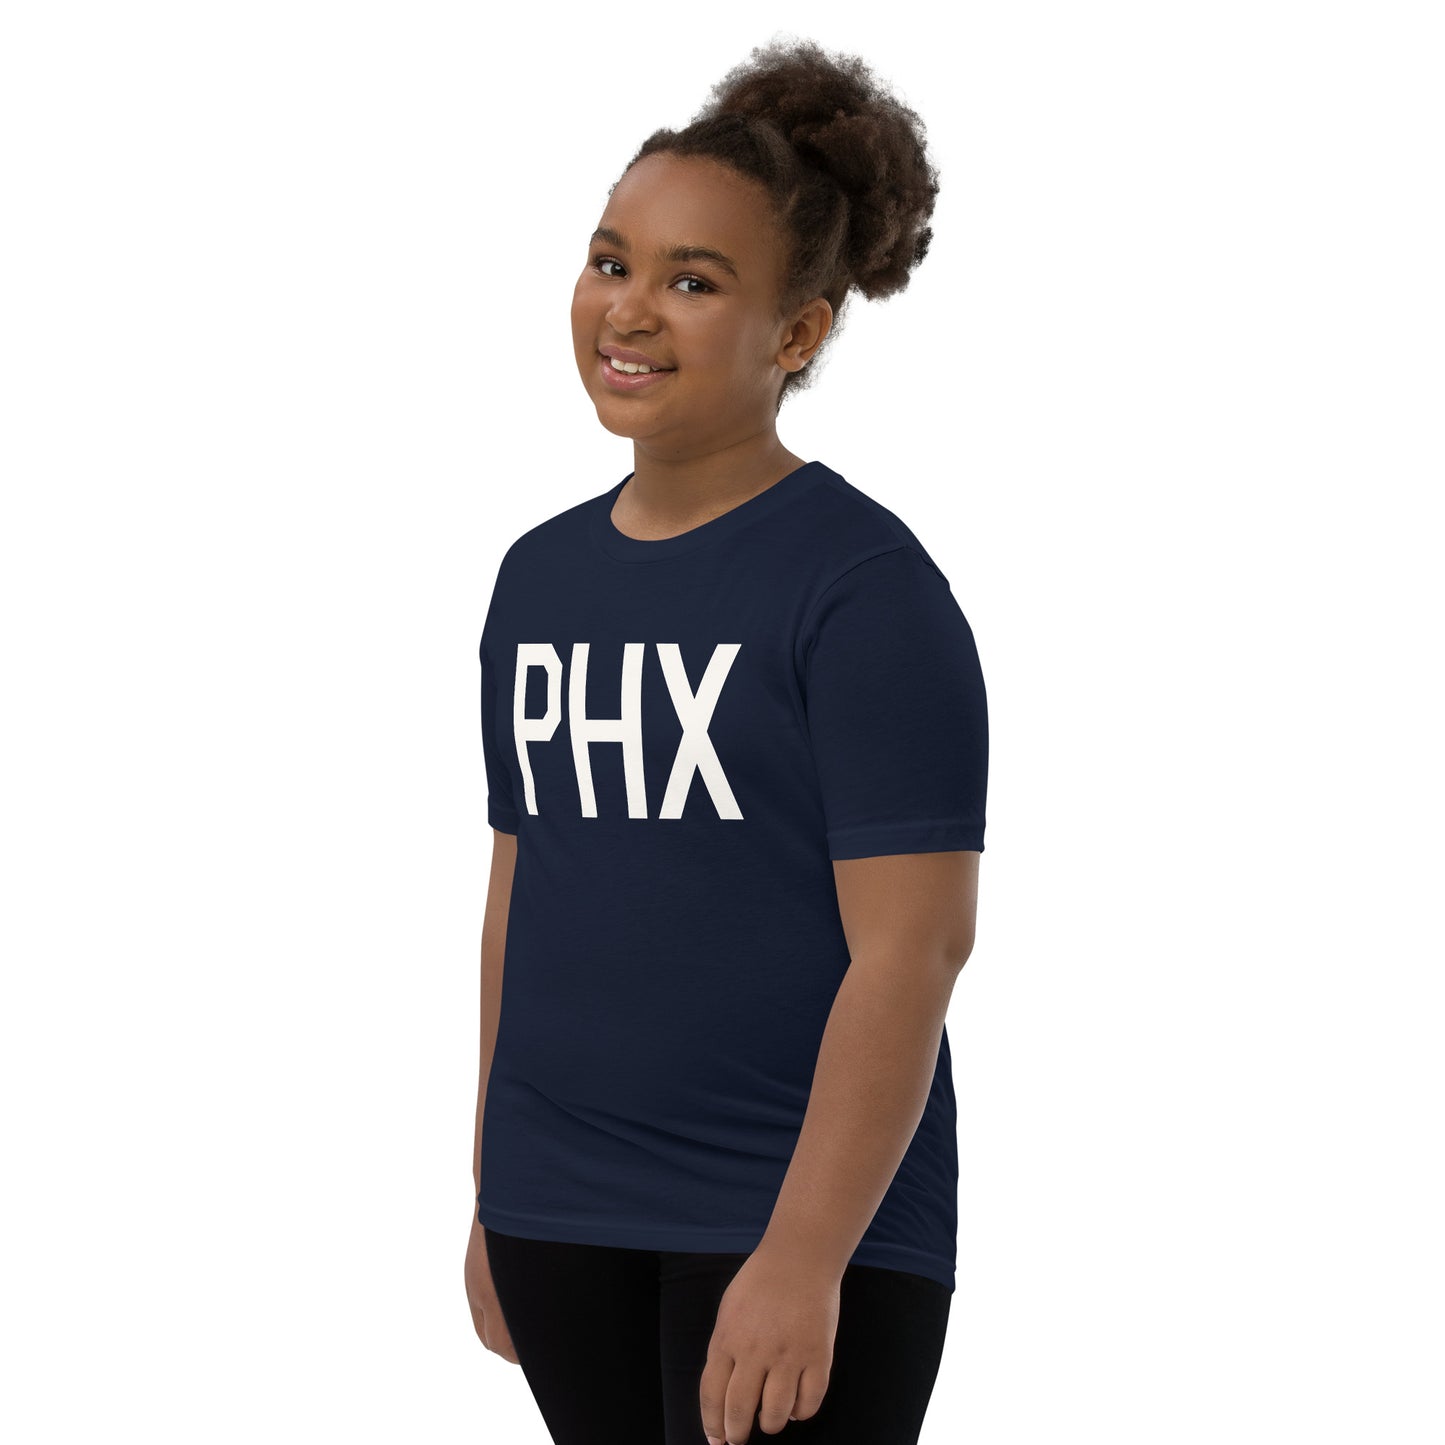 Kid's T-Shirt - White Graphic • PHX Phoenix • YHM Designs - Image 02